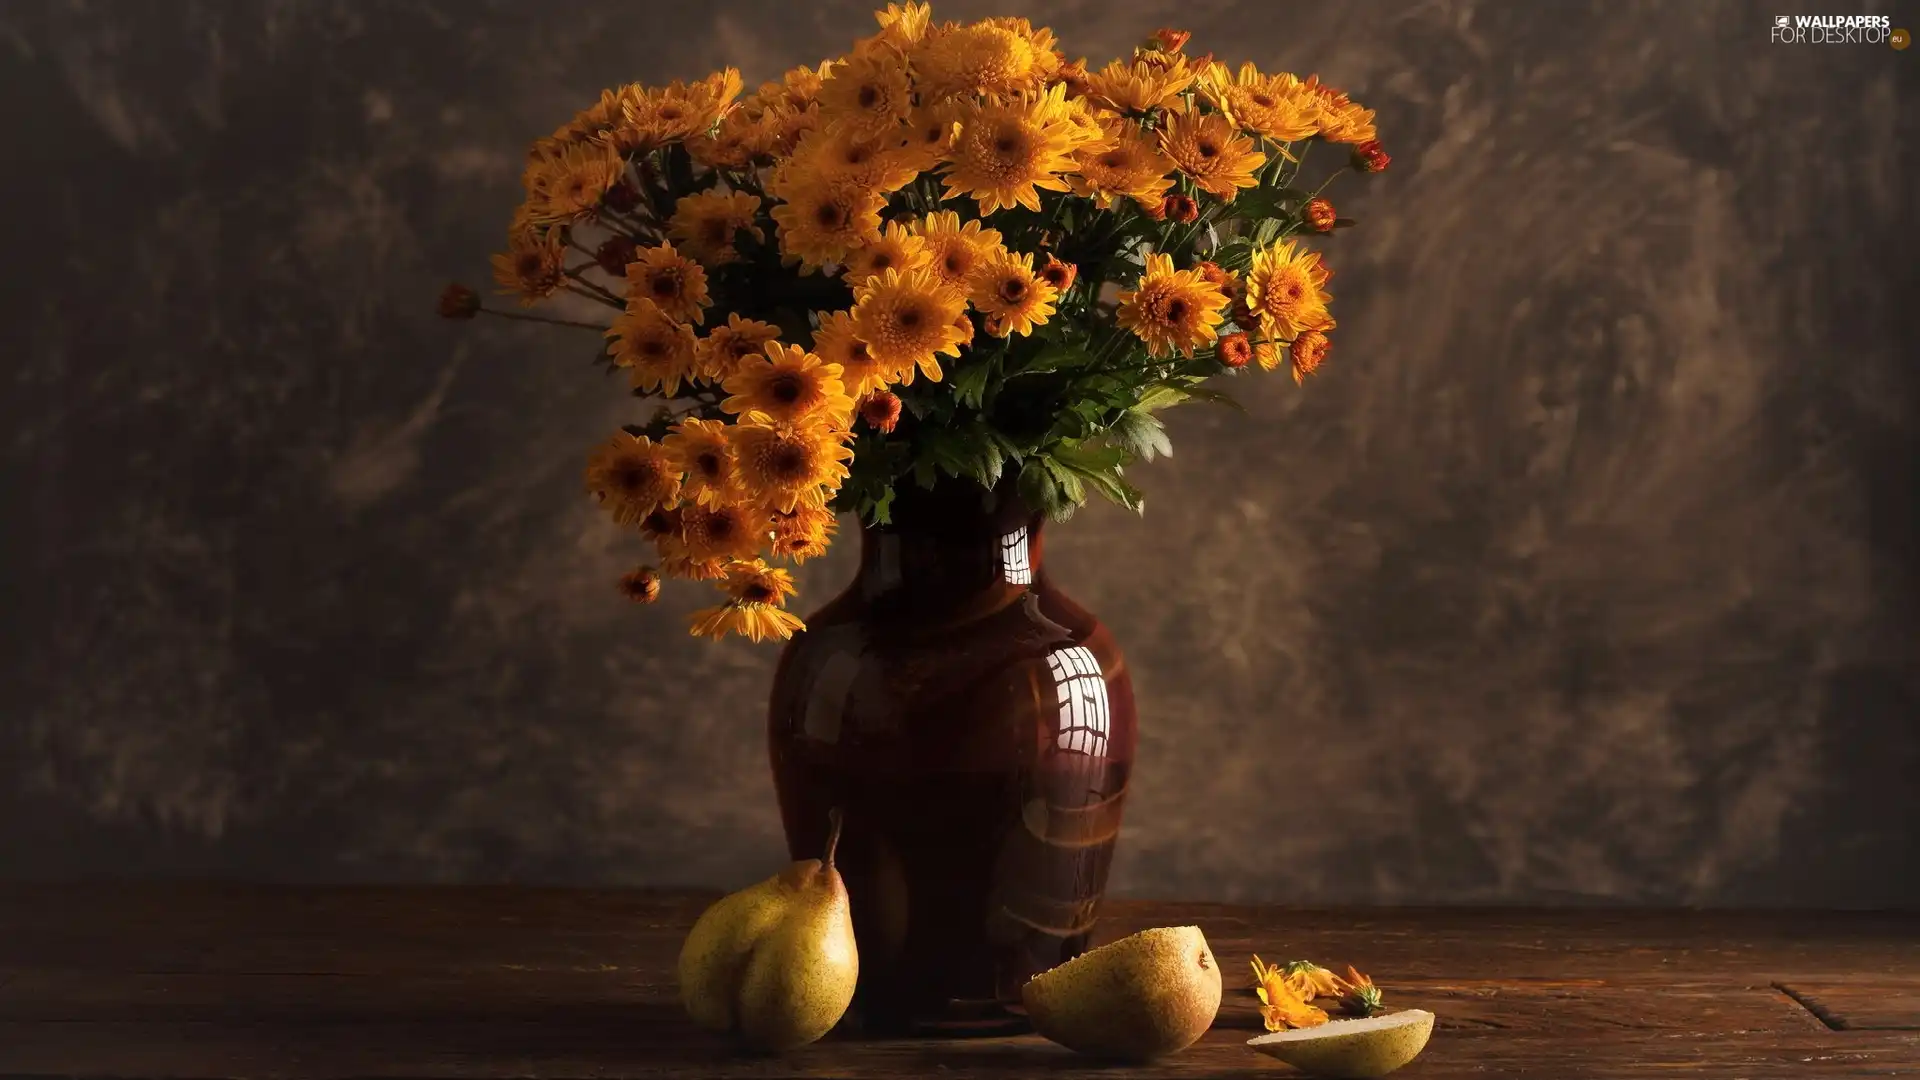 Flowers, composition, Vase, truck concrete mixer, Chrysanthemums, bouquet